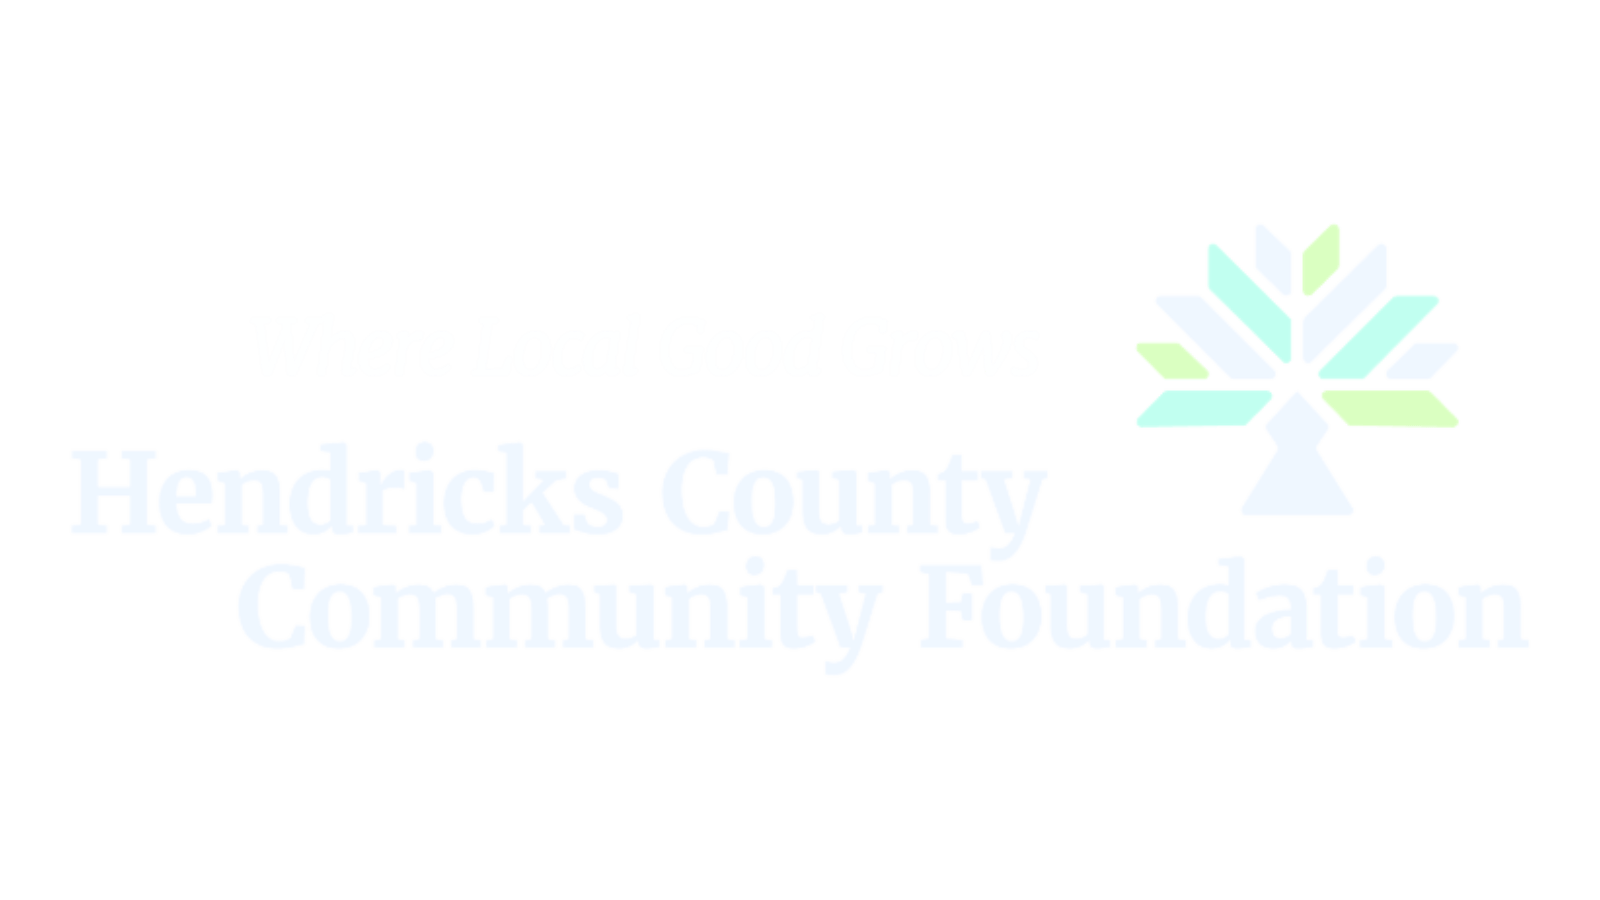 Hendricks County Community Foundation logo